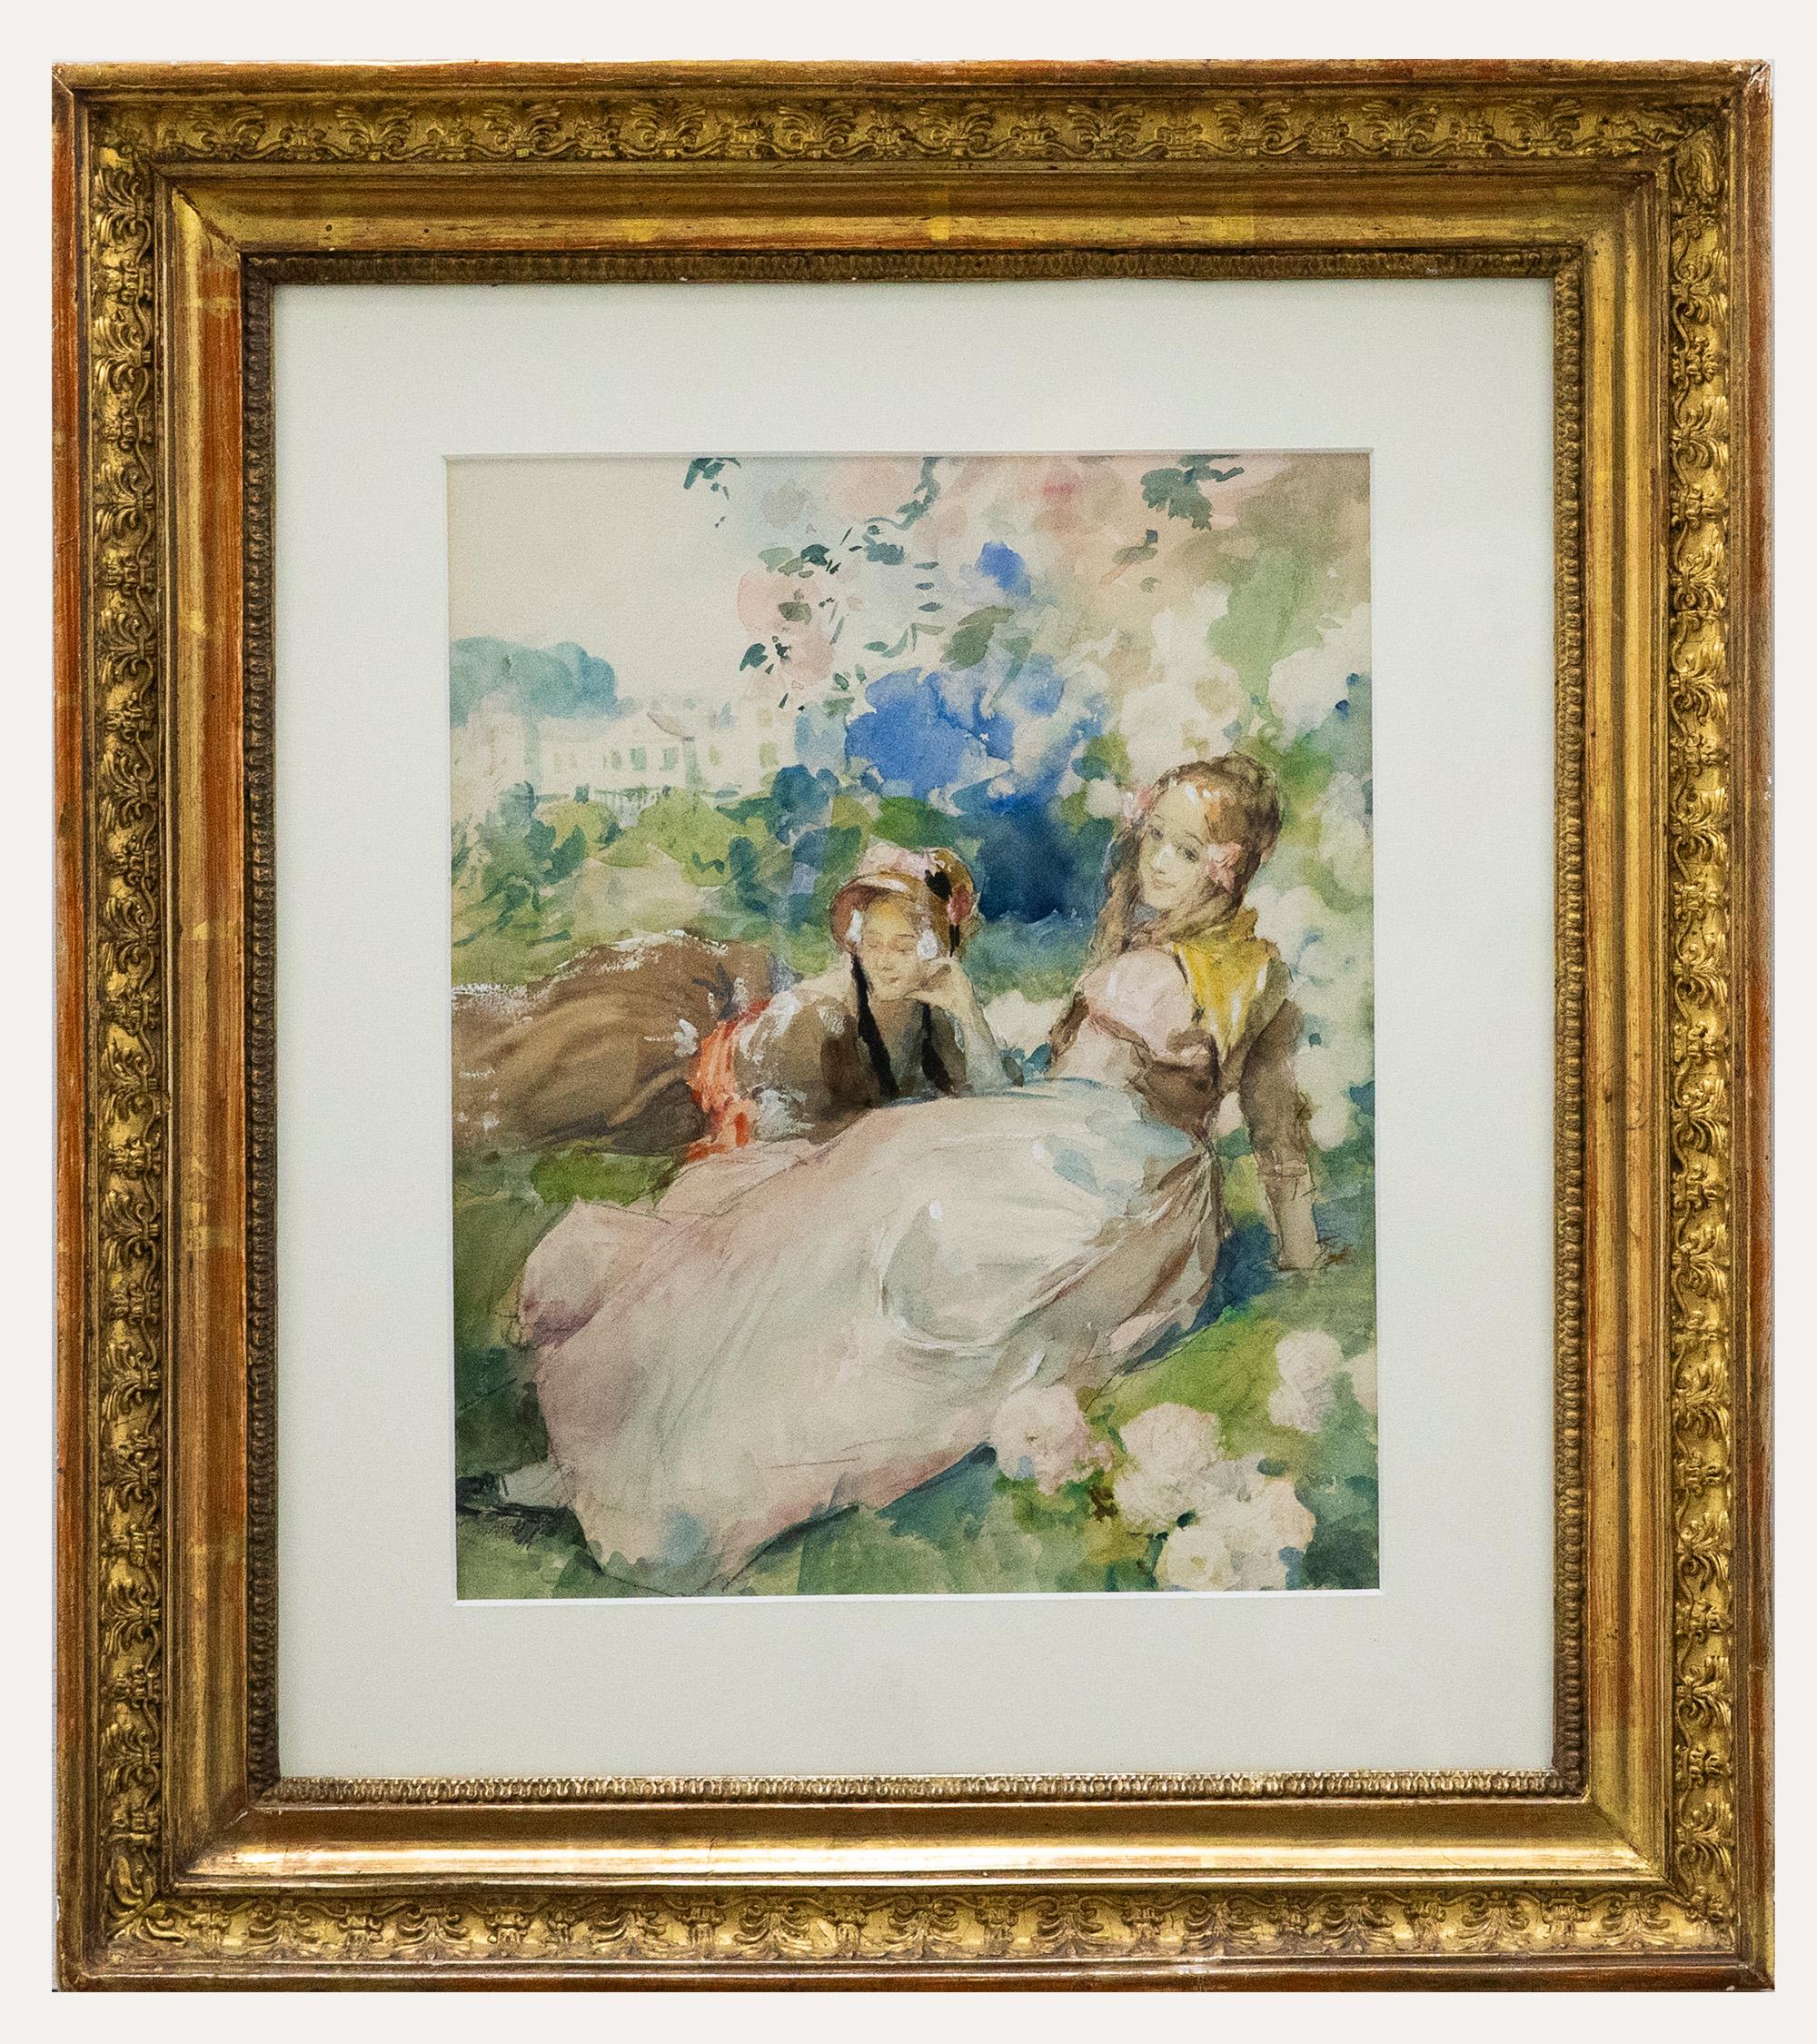 Une délicieuse étude à l'aquarelle de l'artiste français Antoine Calbet. La scène représente deux dames allongées dans un jardin majestueux en plein été. Ils sont entourés de roses en pleine floraison et l'on aperçoit au loin un manoir de campagne.